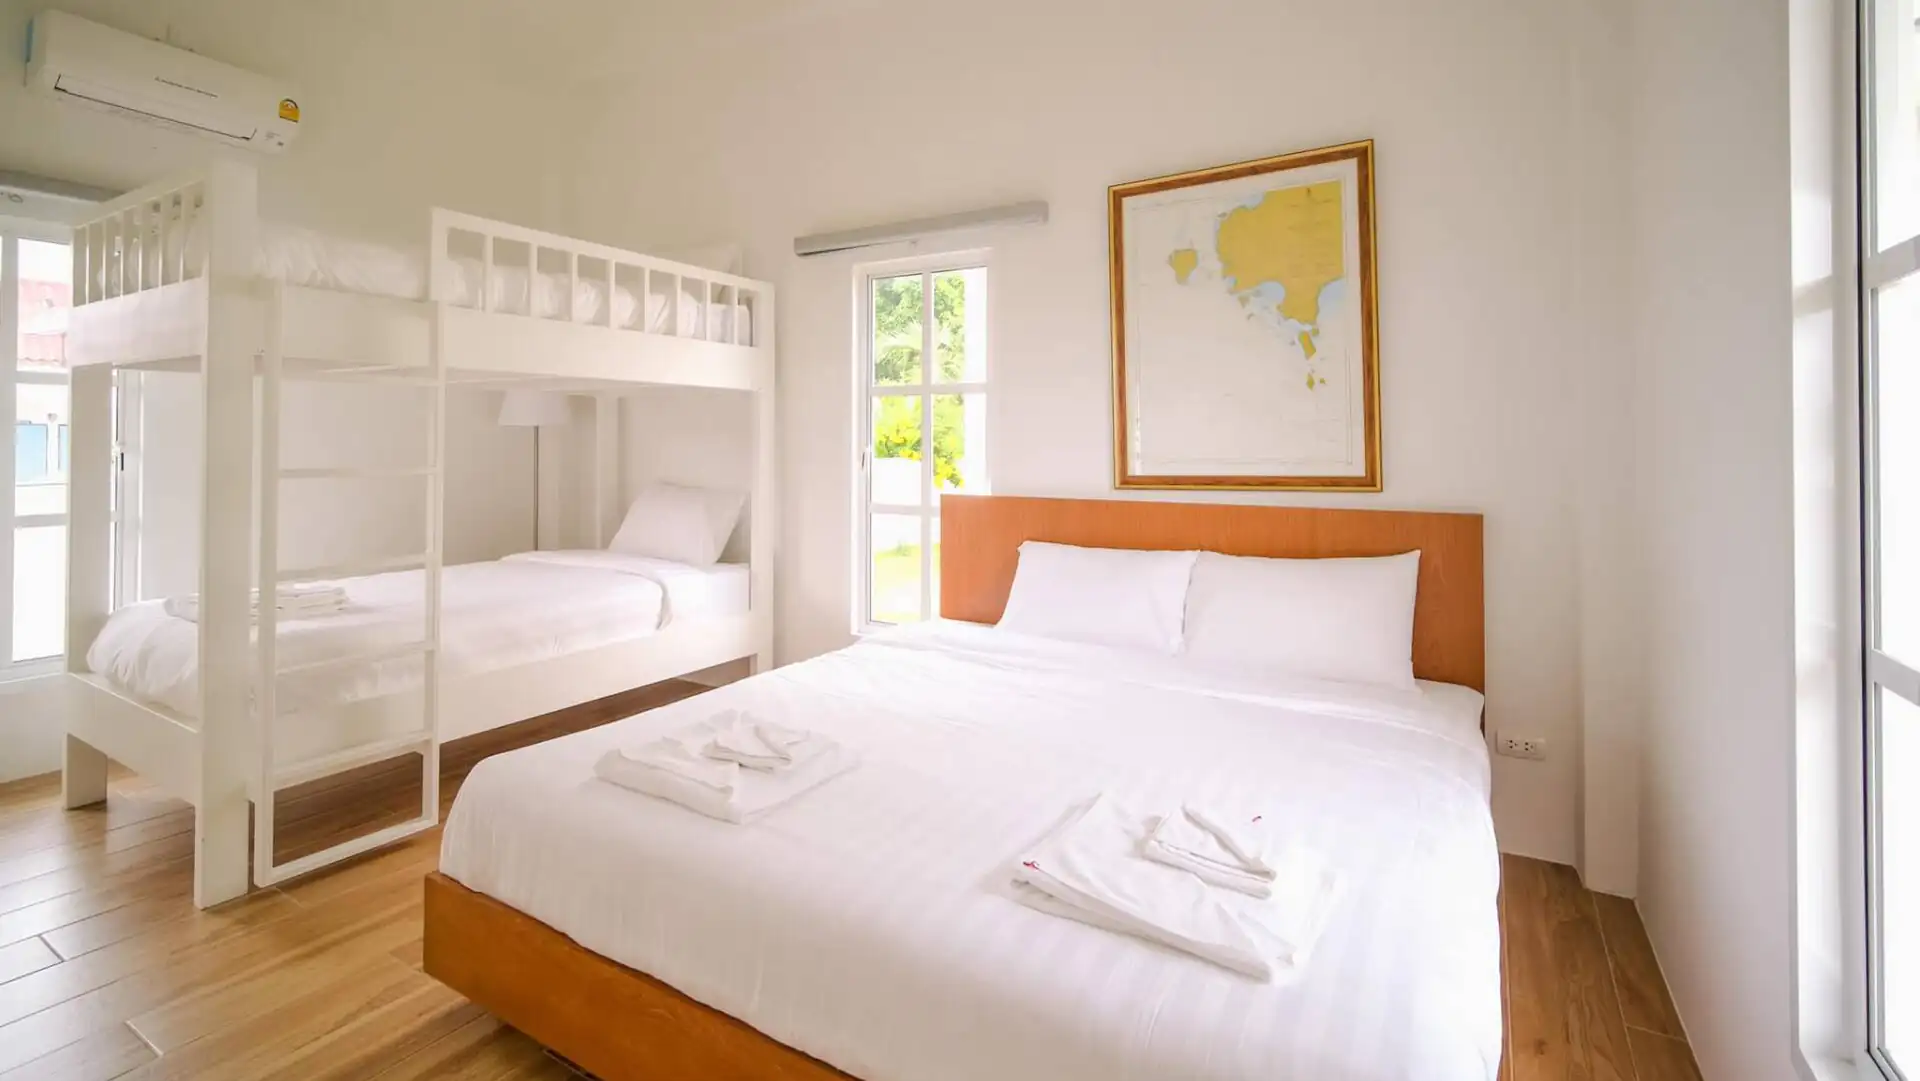 Phòng ngủ lớn trang trí theo phong cách tối giản, gồm một chiếc giường đôi và một chiếc giường tầng